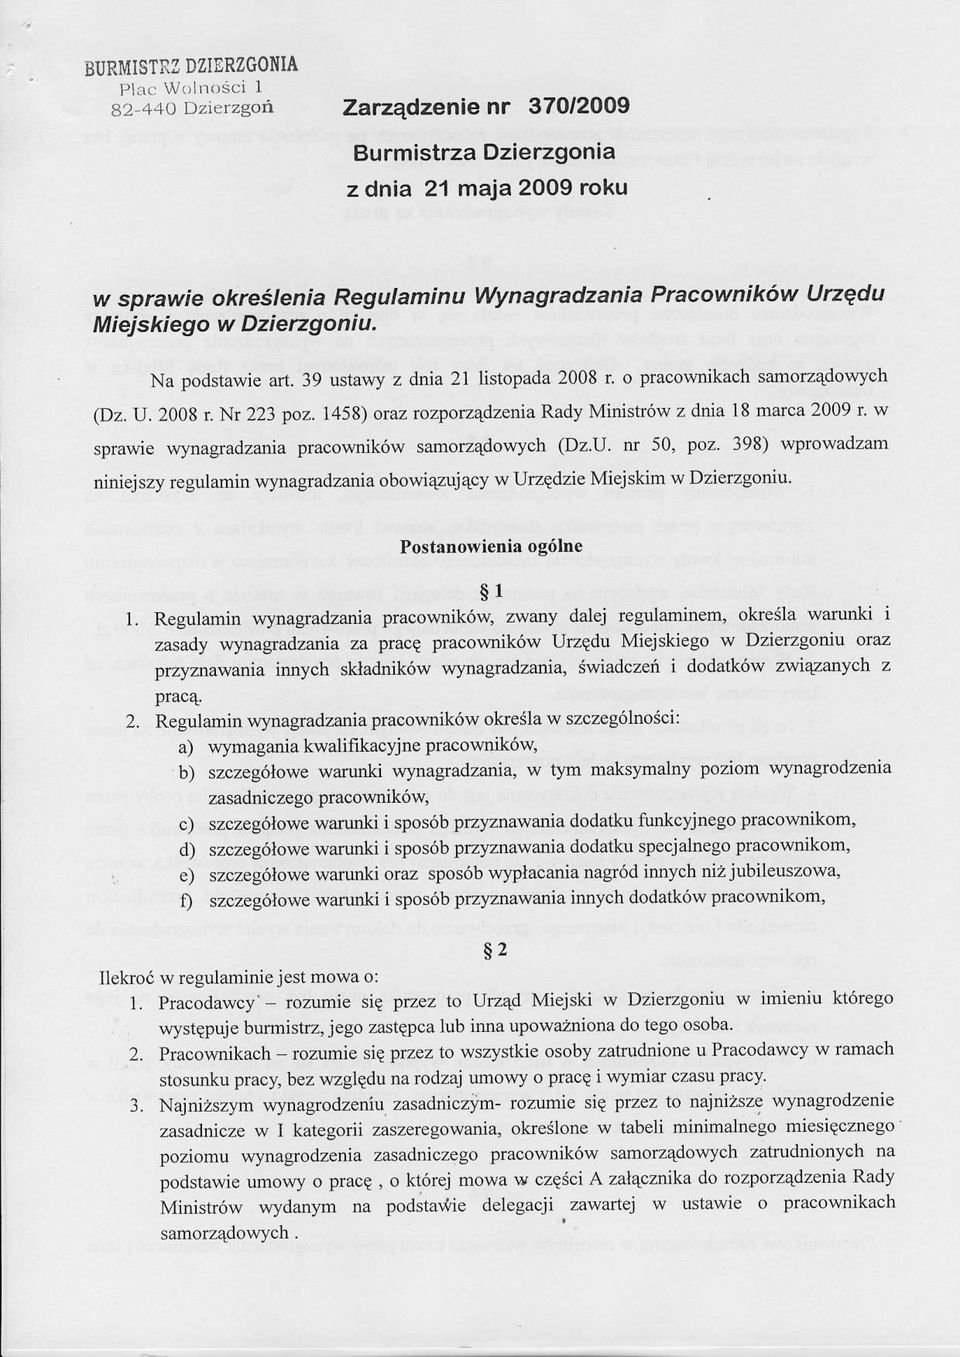 1458) onz tozporz4dzenia Rady Ministr6w z dnia 18 marca 2009 r' w sprawie wynagradzania pracownik6w samorz4dowych (Dz.U. ru 50, poz.